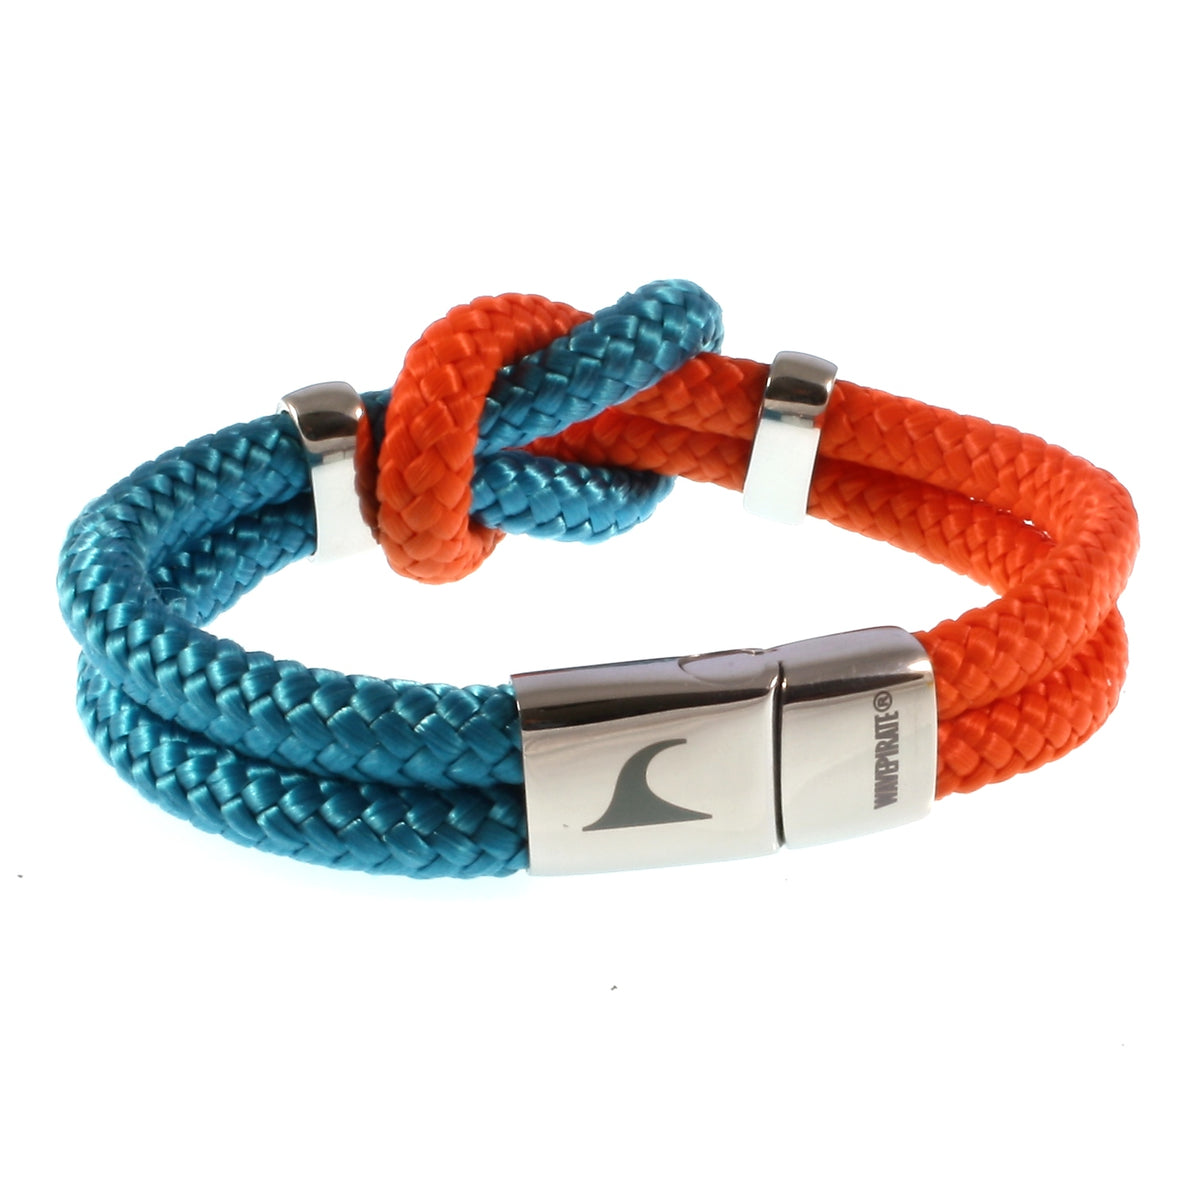 Damen-Segeltau-armband-pure-blau-orange-silber-geflochten-Edelstahlverschluss-hinten-wavepirate-shop-st